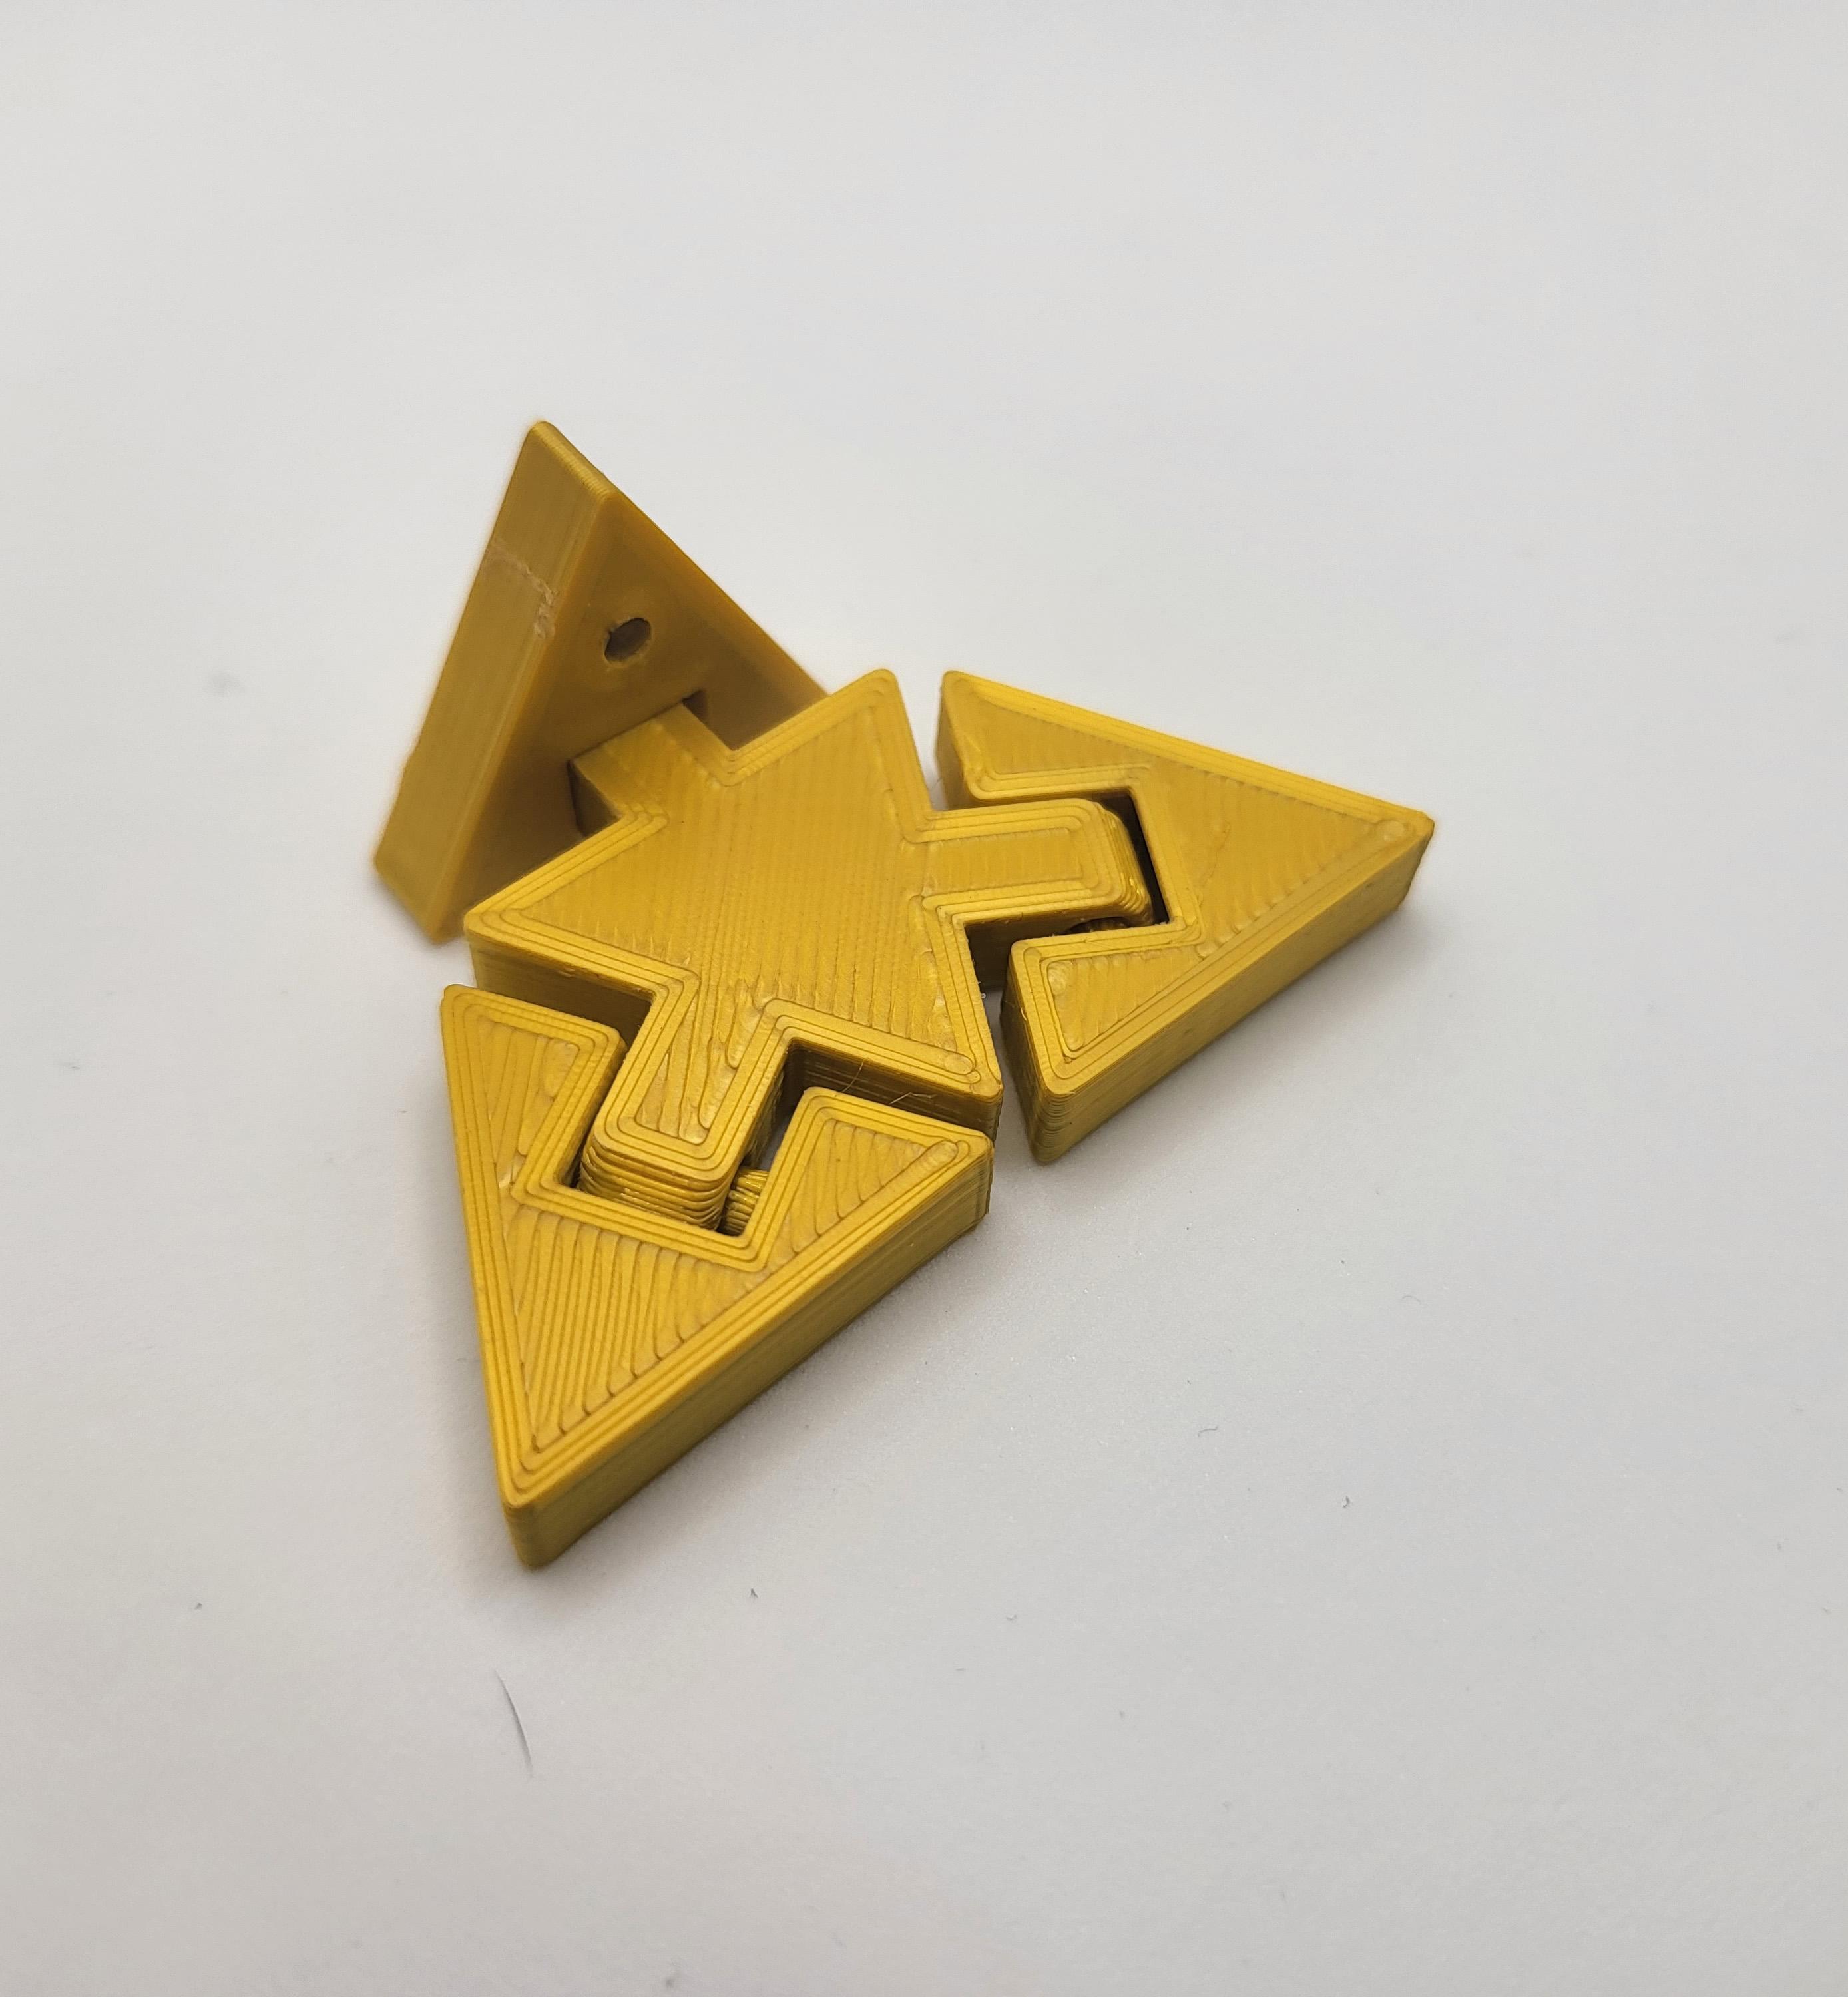 Print in place Zelda flexi-triforce keyring 3d model